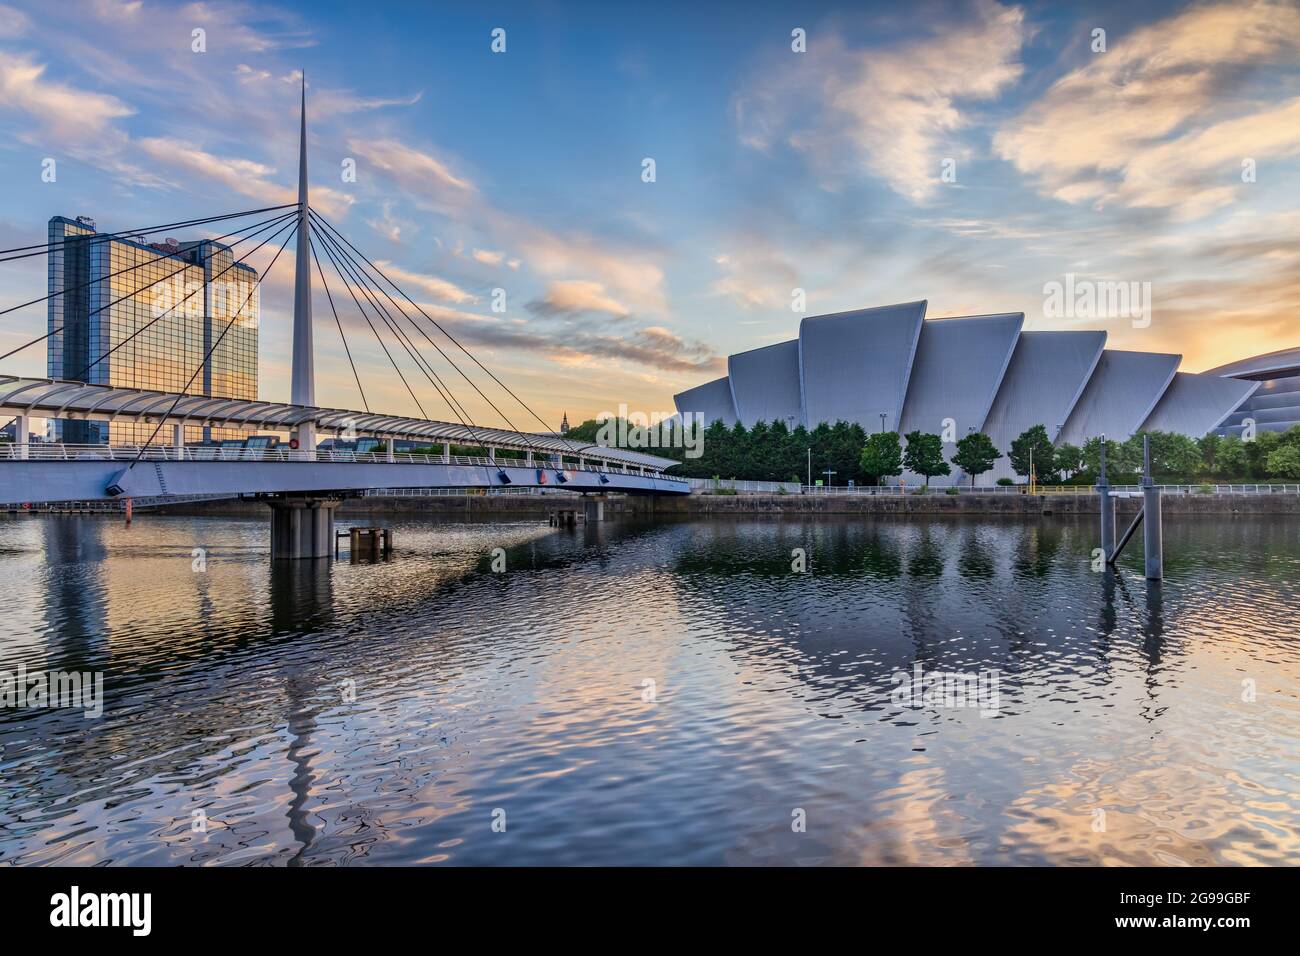 Le pont de Bell et le SEC Armadillo près de la rivière Clyde à Glasgow, pris au lever du soleil. Banque D'Images